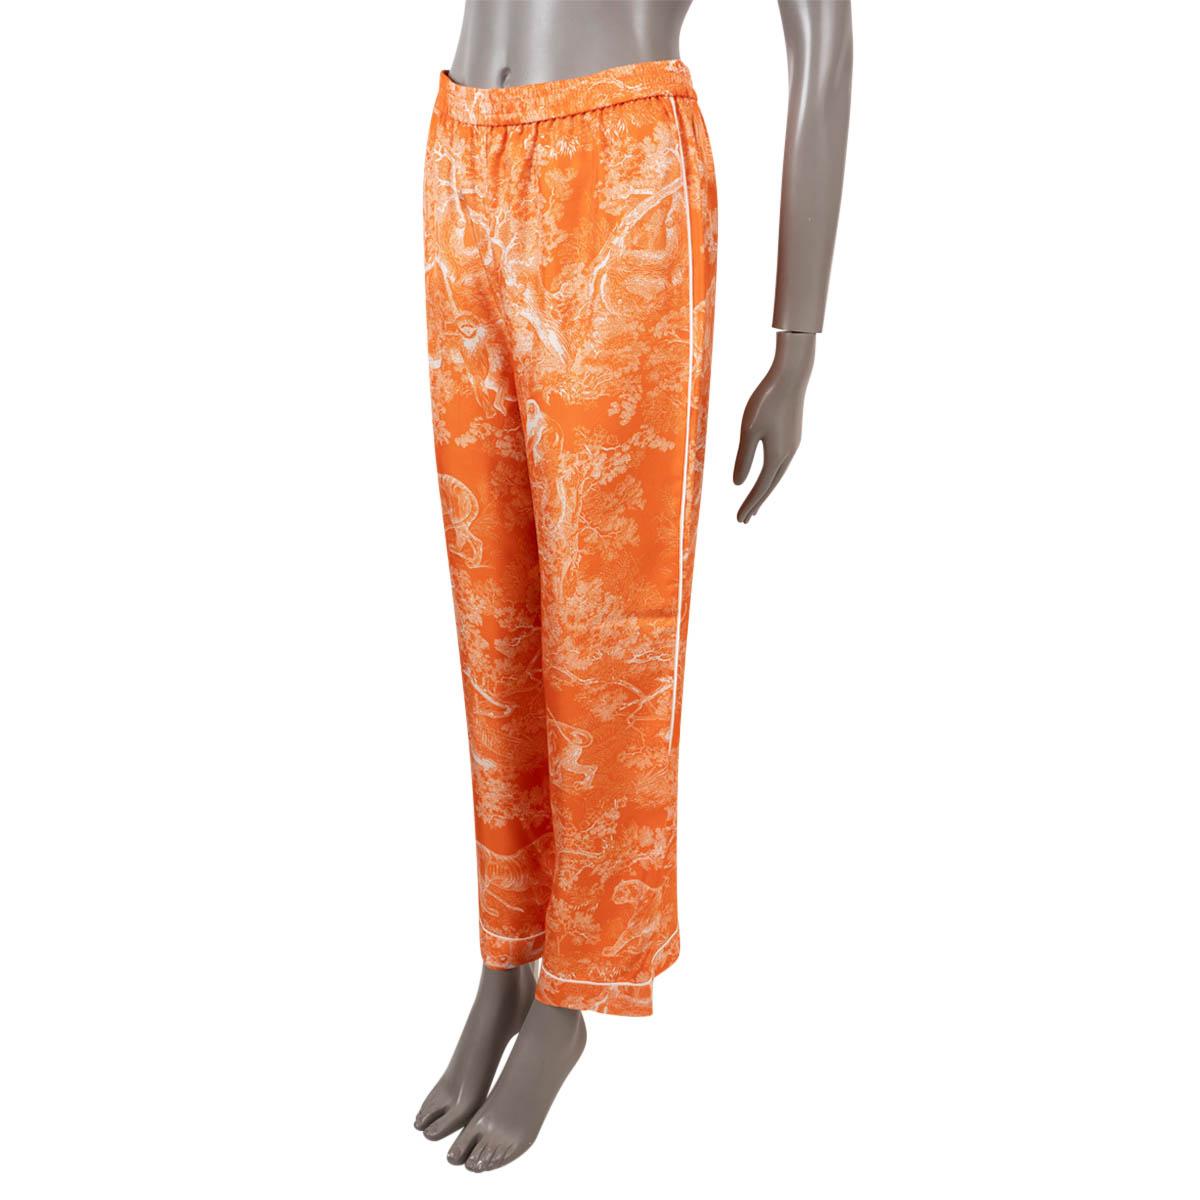 Pantalon de pyjama Christian Dior 100% authentique en Toile de Jouy orange fluorescent. Sergé de soie inversé (100%). Doté d'un passepoil blanc contrastant, de jambes larges et d'une taille élastique. A été porté et est en excellent état.

Complétez